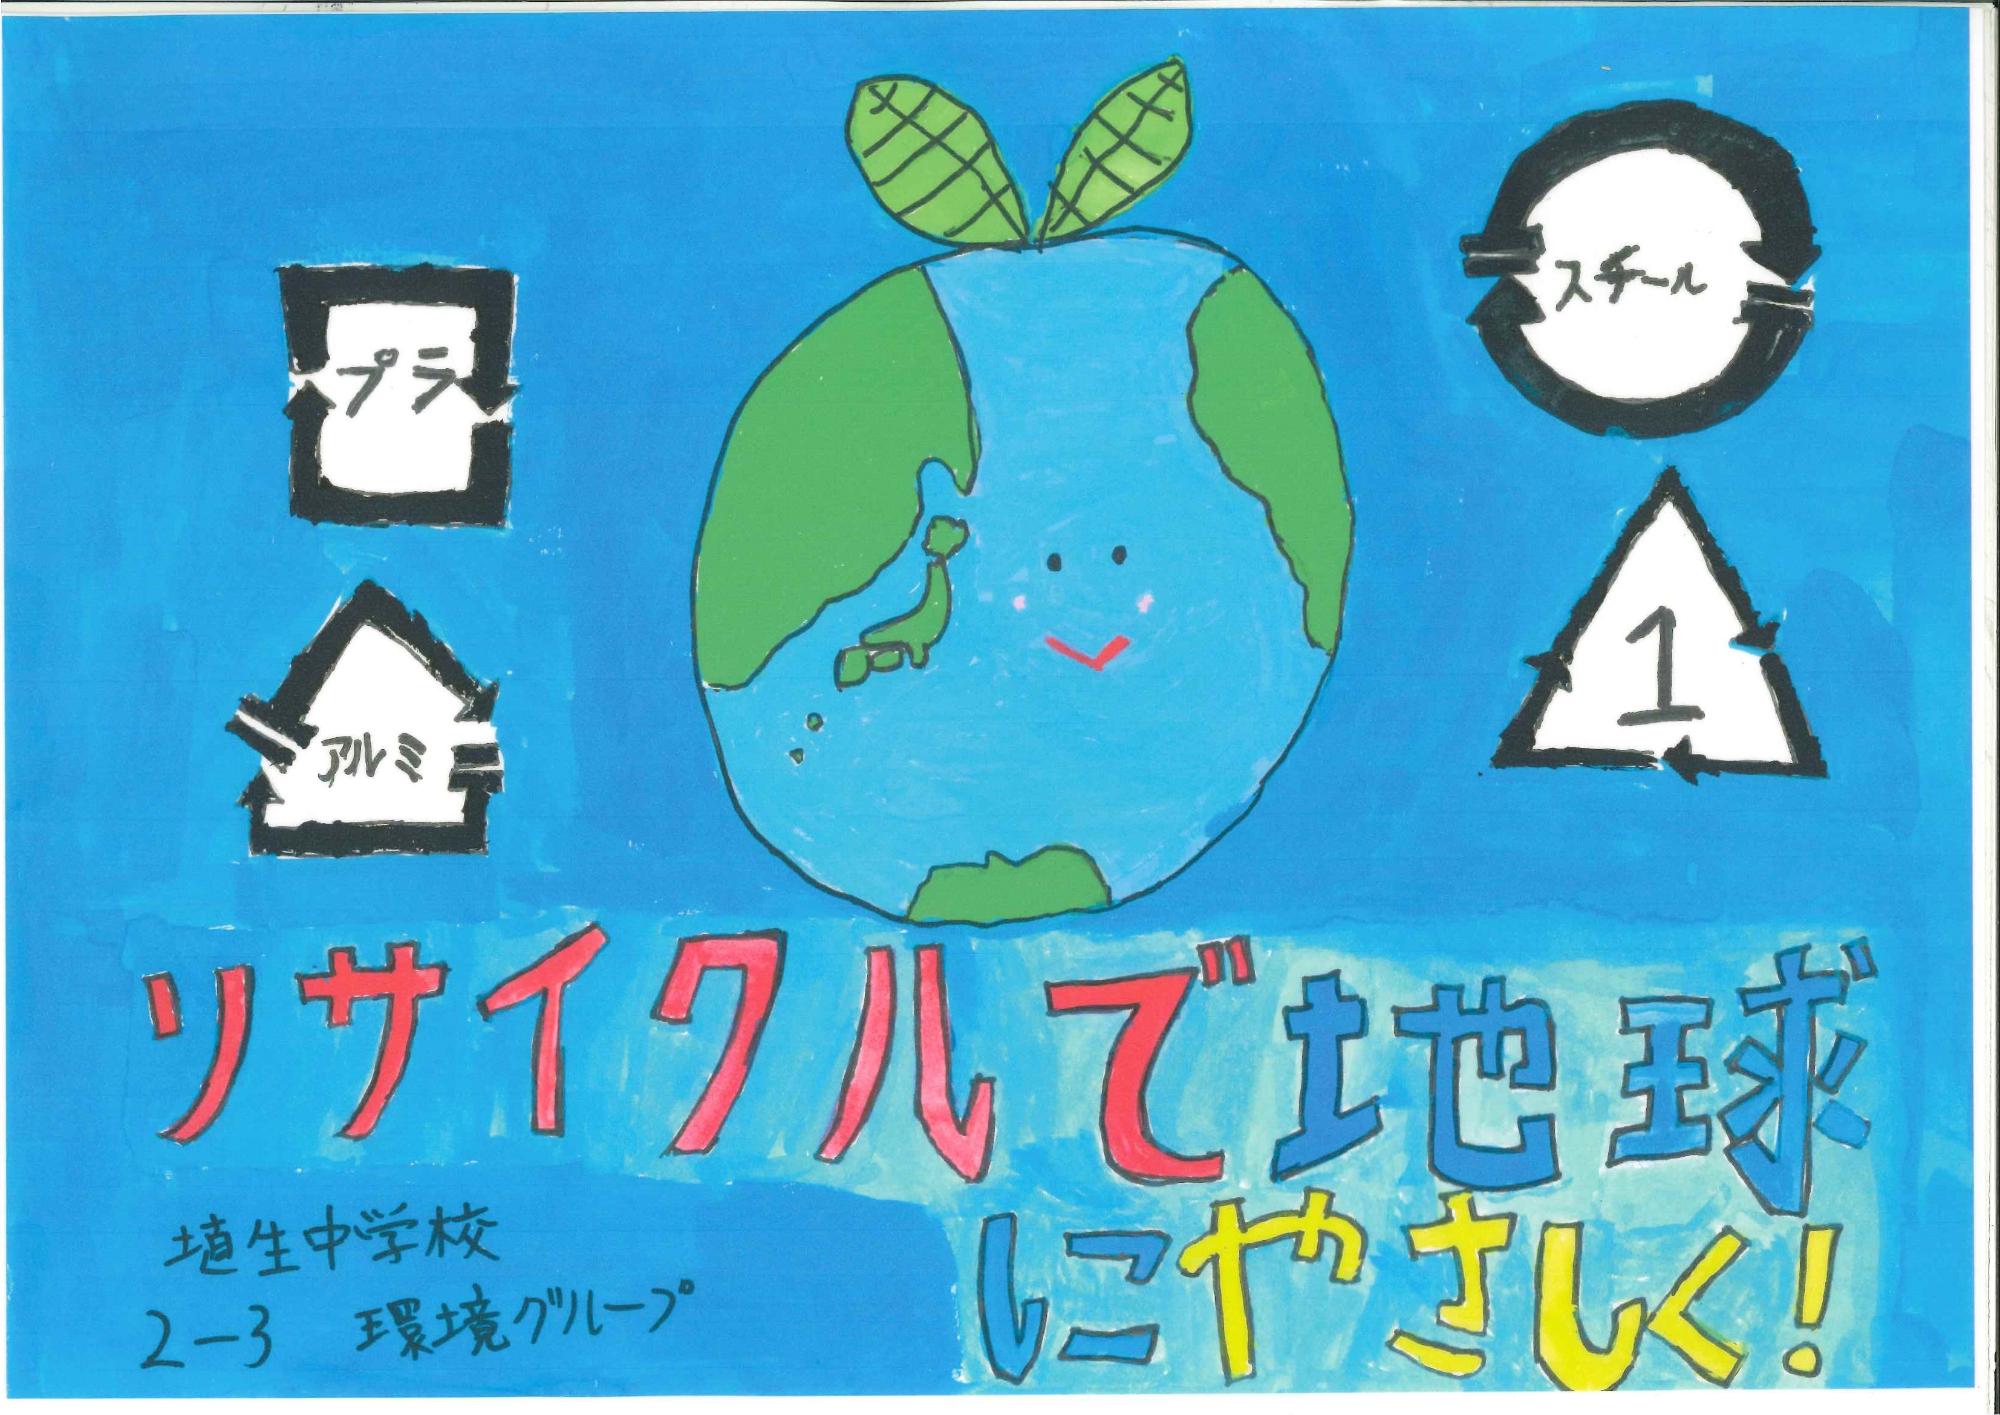 埴生中学生が作成した環境保全を呼びかけるポスター1